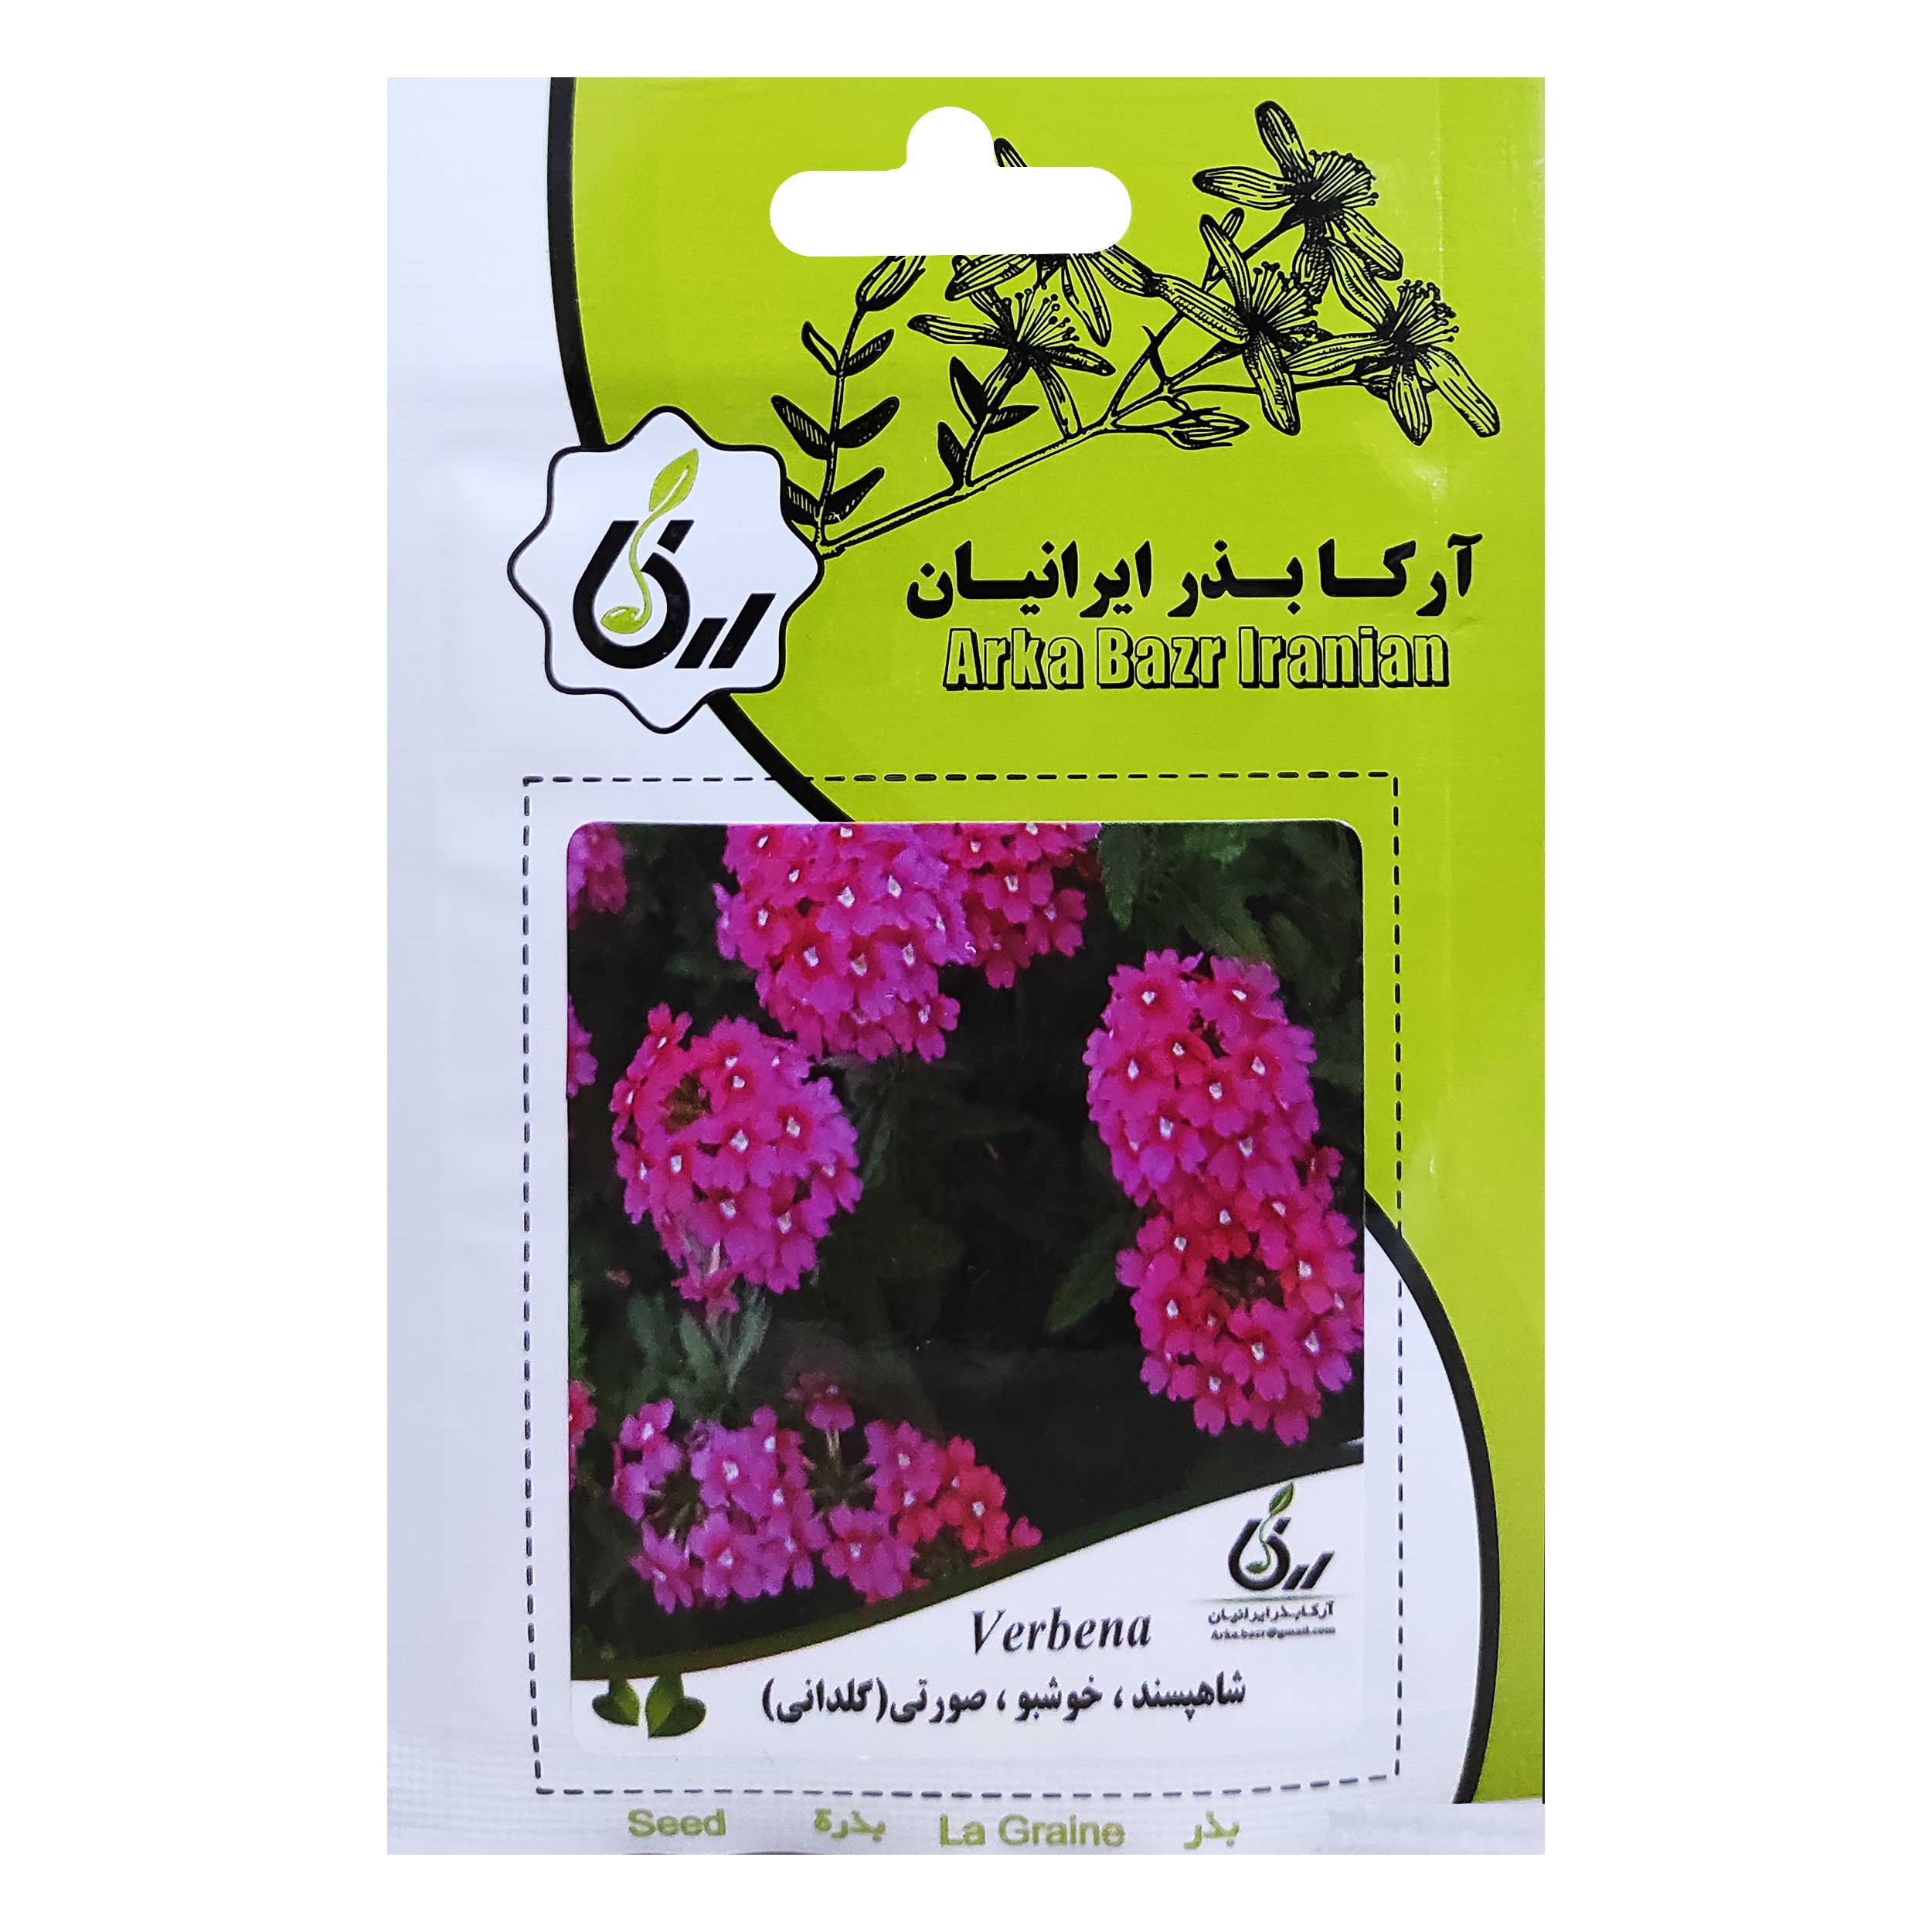 بذر شاهپسند خوشبو صورتی گلدانی آرکا بذر ایرانیان کد ARK-033